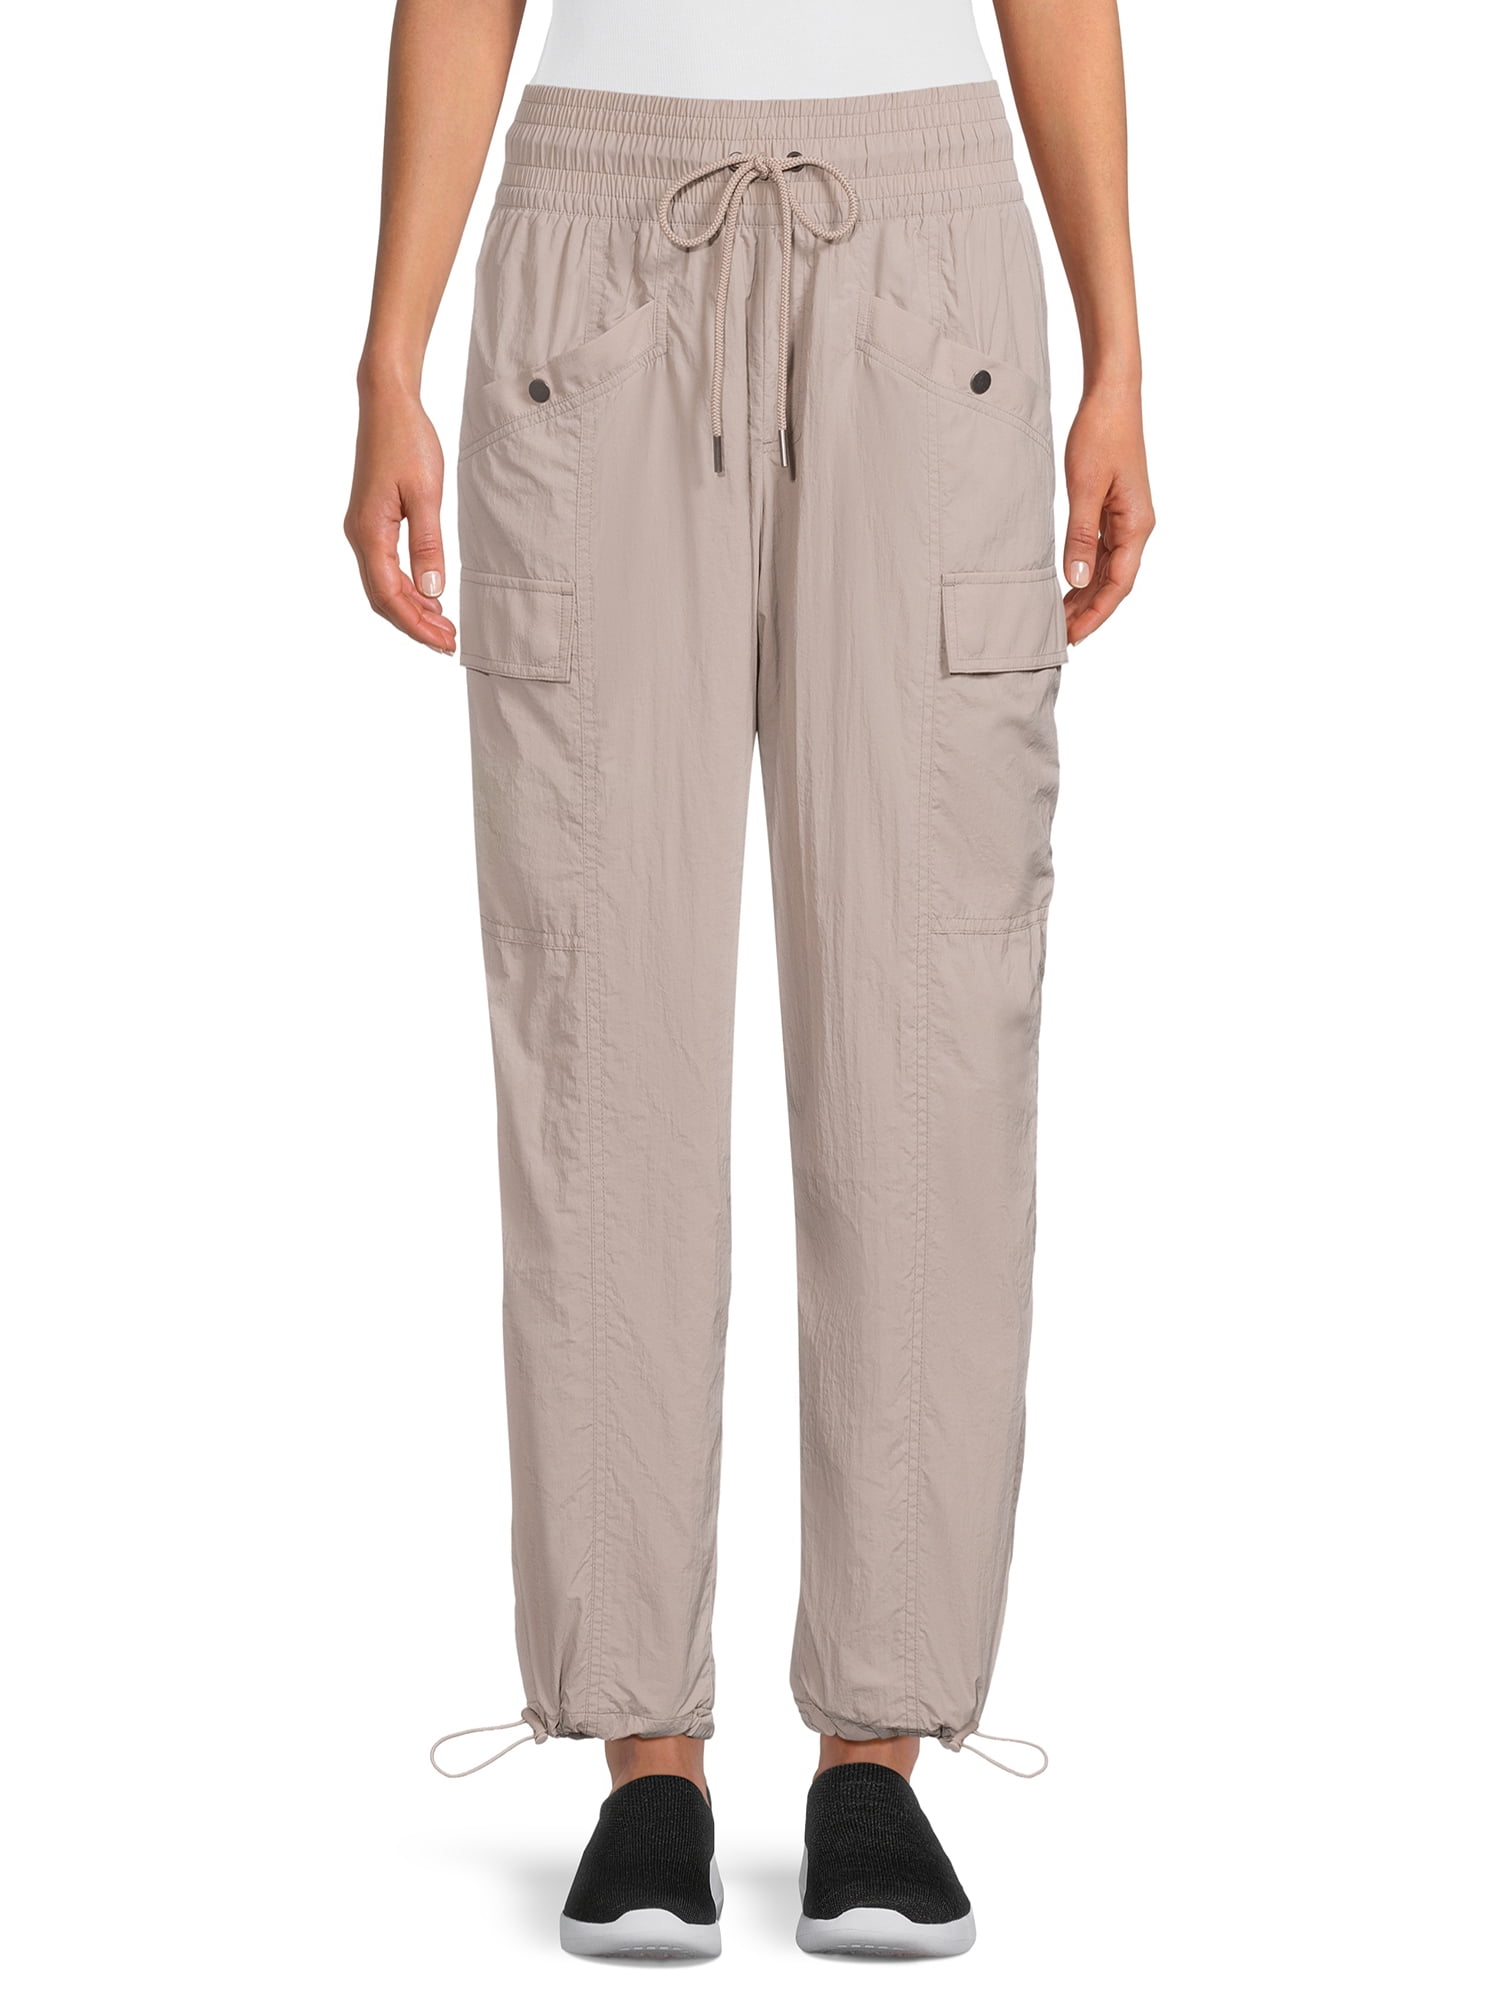 Avia Women’s Outdoor Cargo Pants with Side Pockets, Sizes XS-XXXL